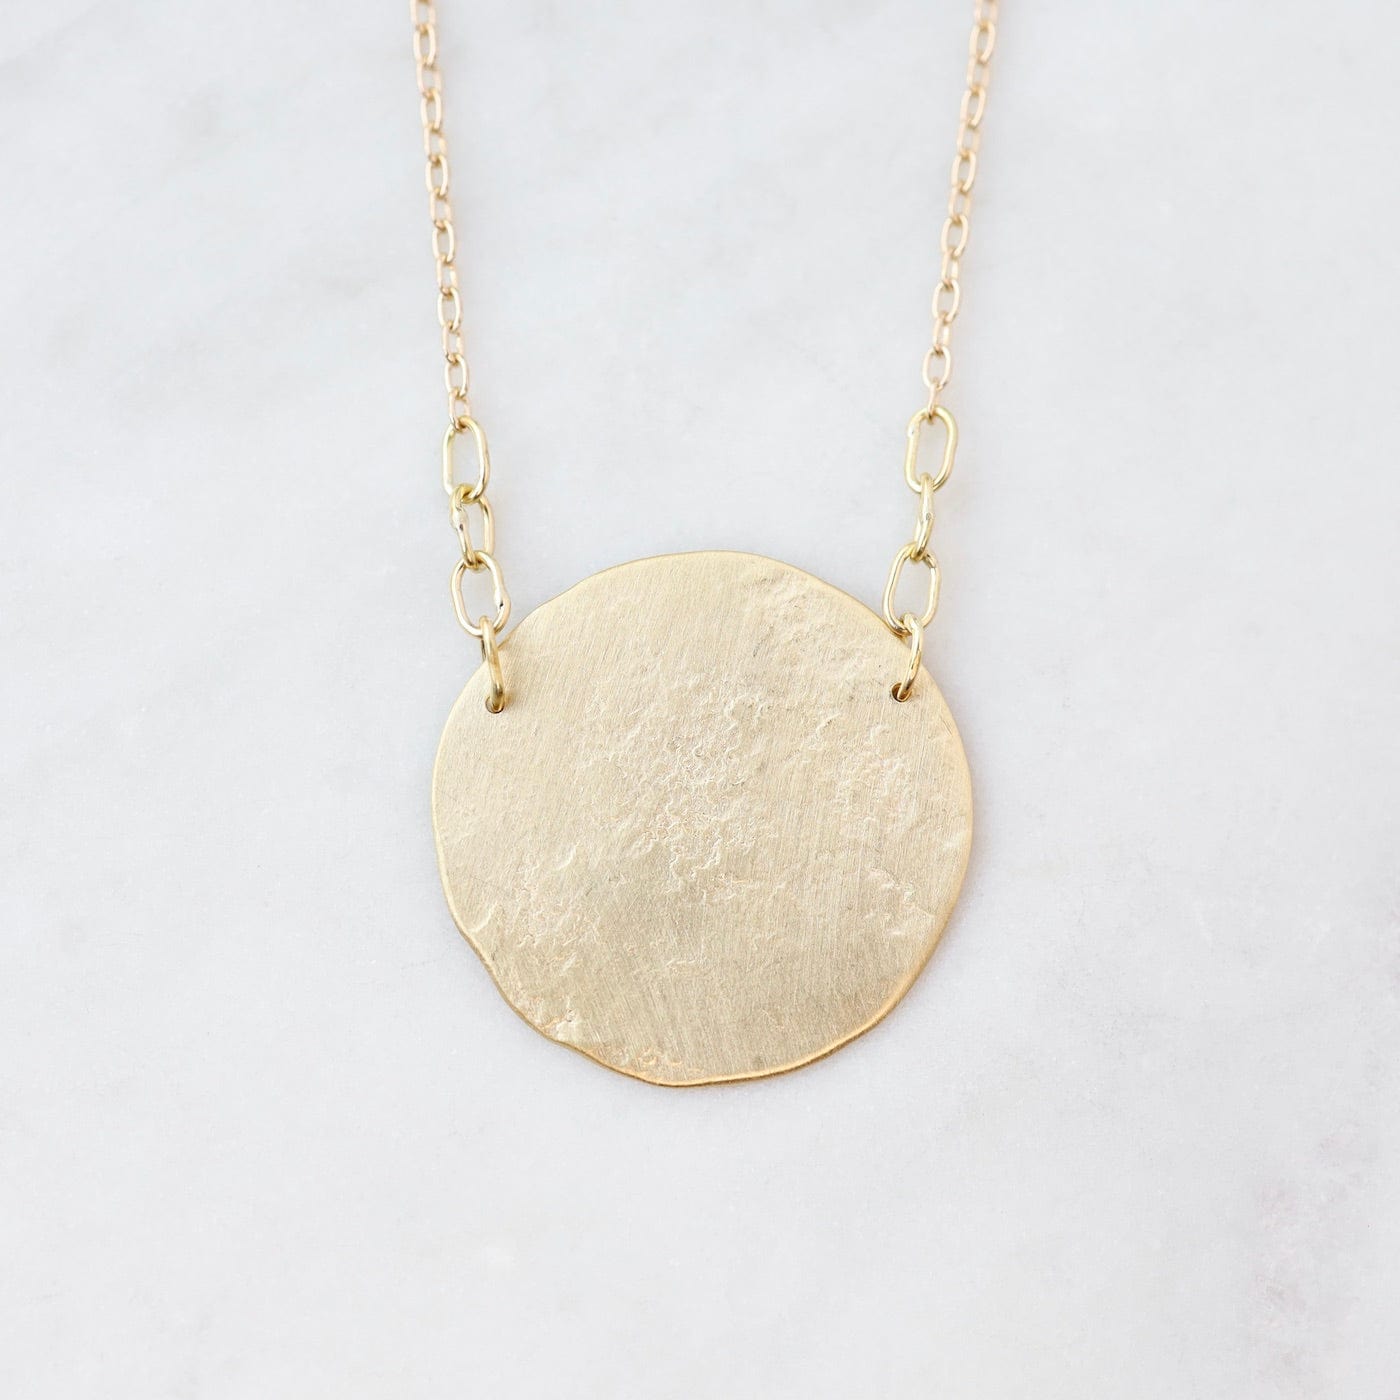 NKL-18K 18k Gold Paper Moon Necklace